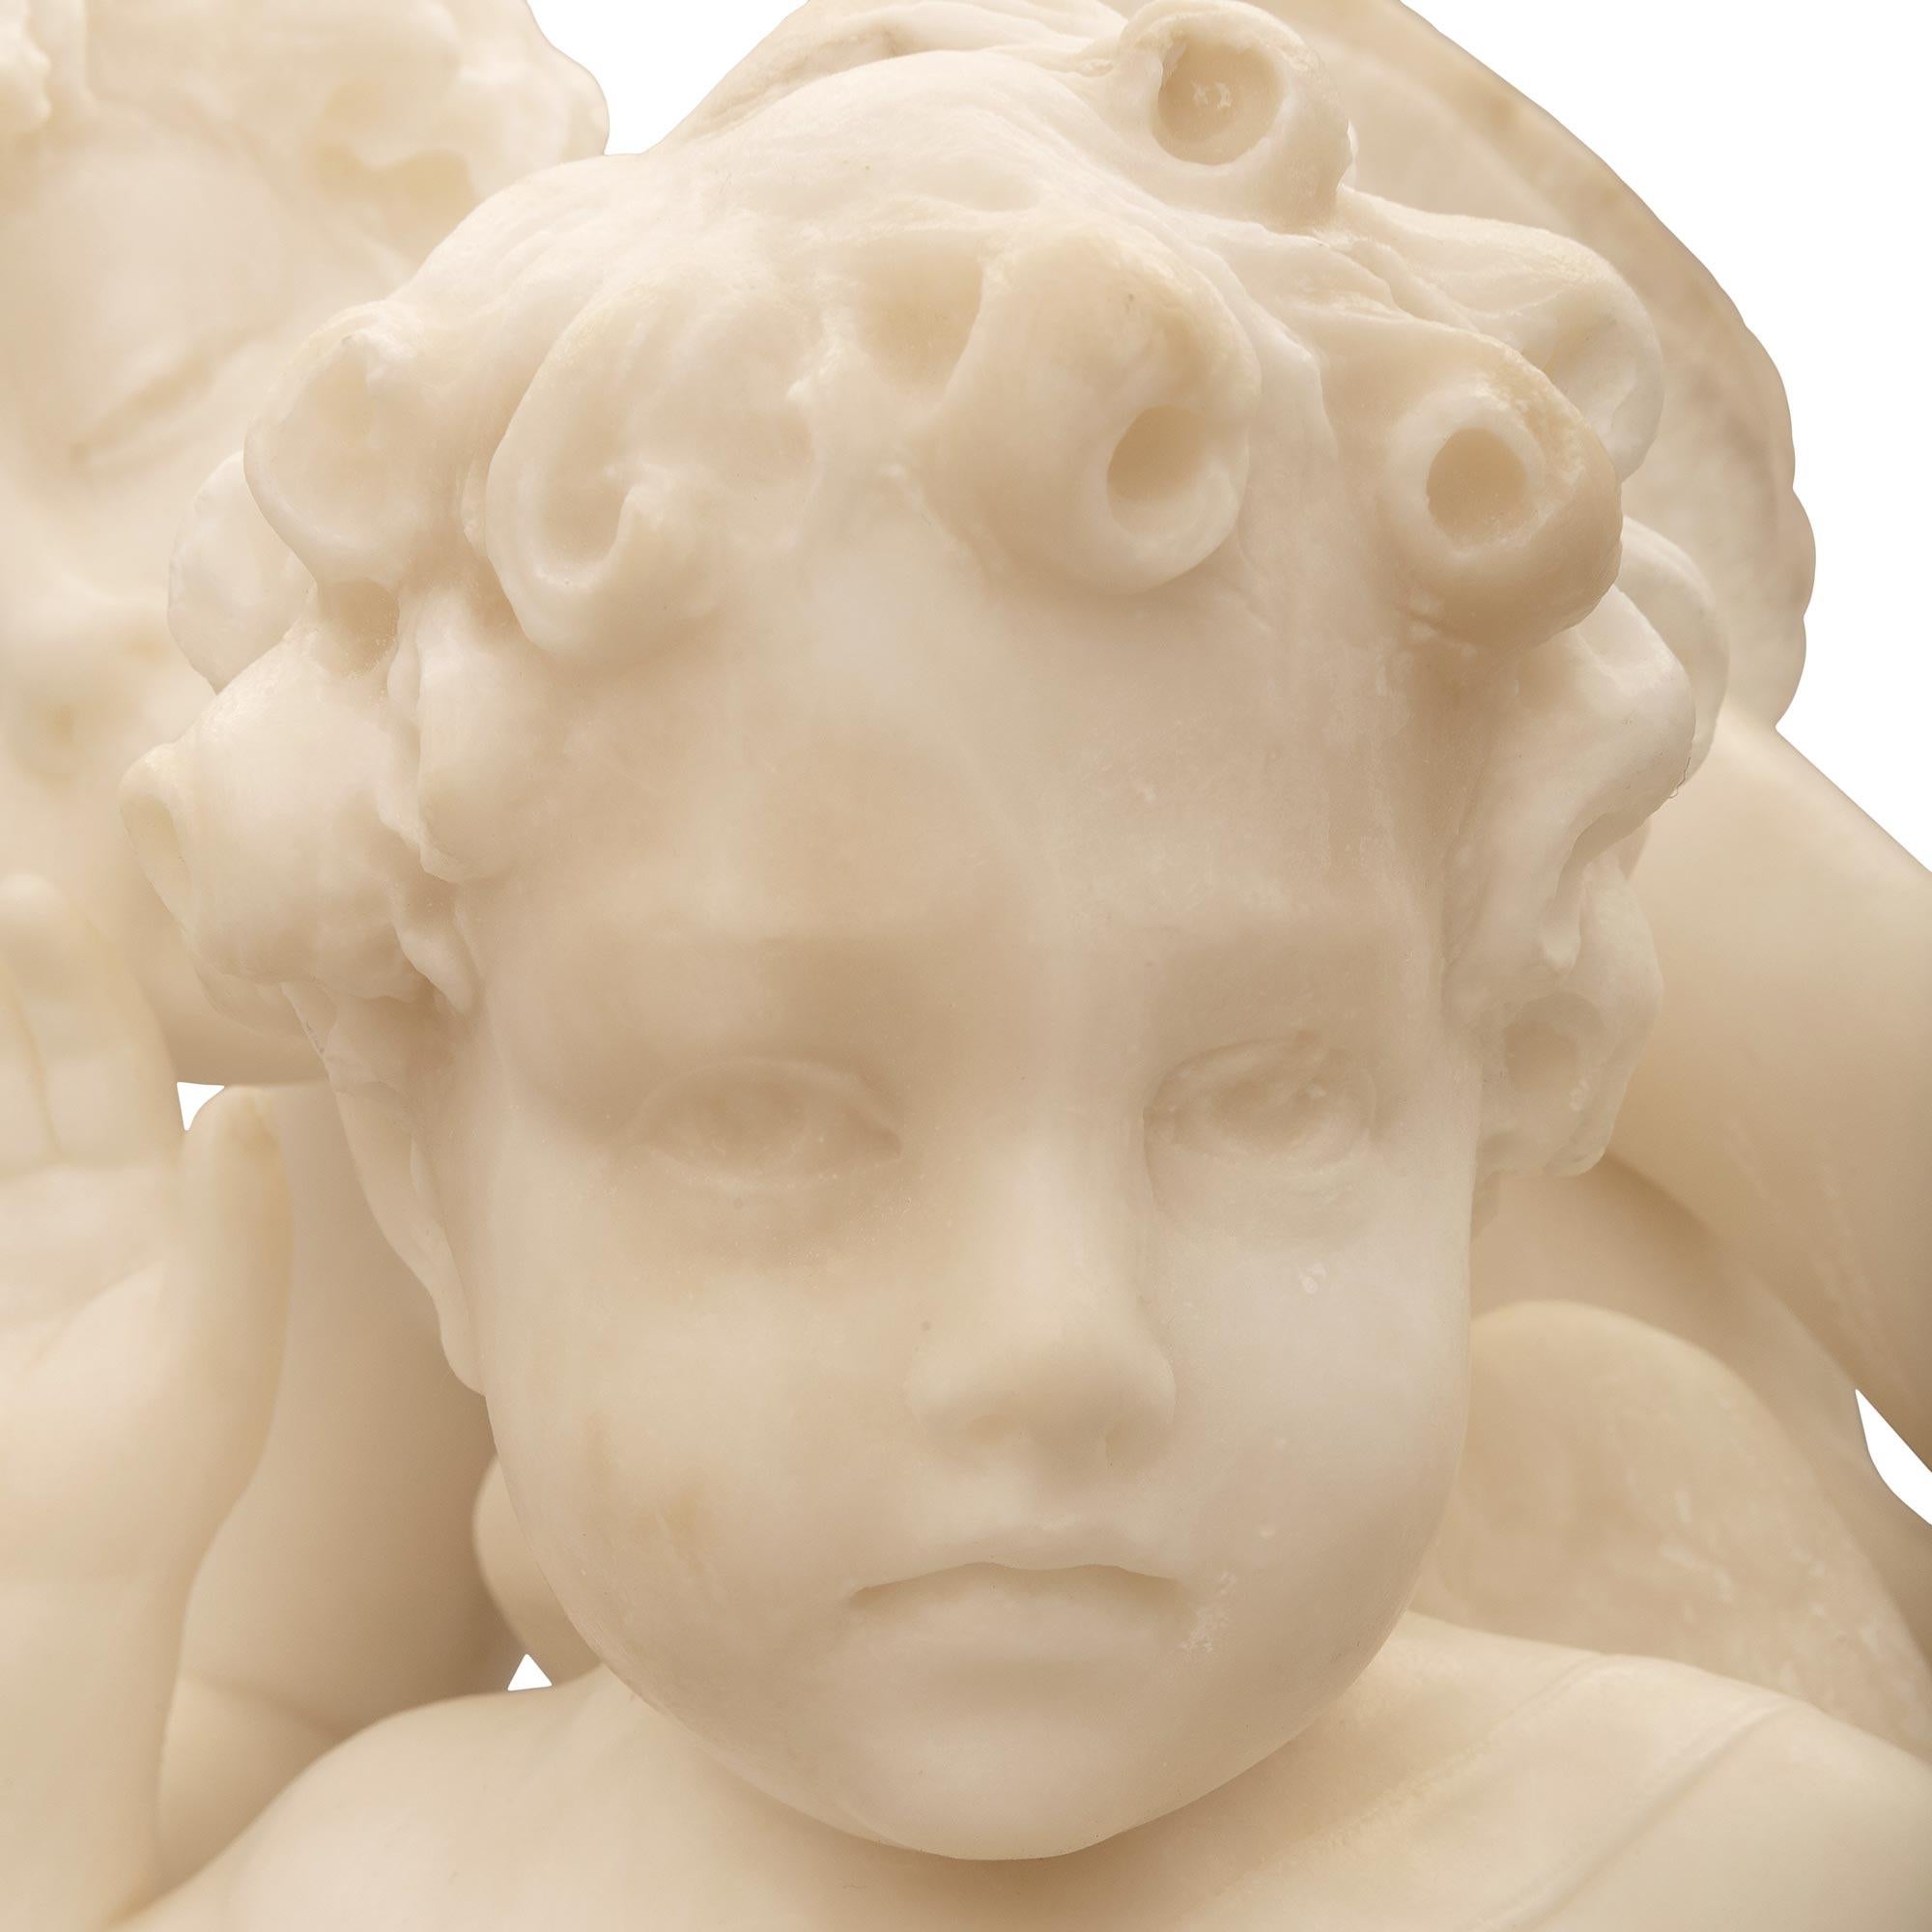 Italian 19th Century White Carrara Marble Statue Titled “Amore Sdegnato” For Sale 4